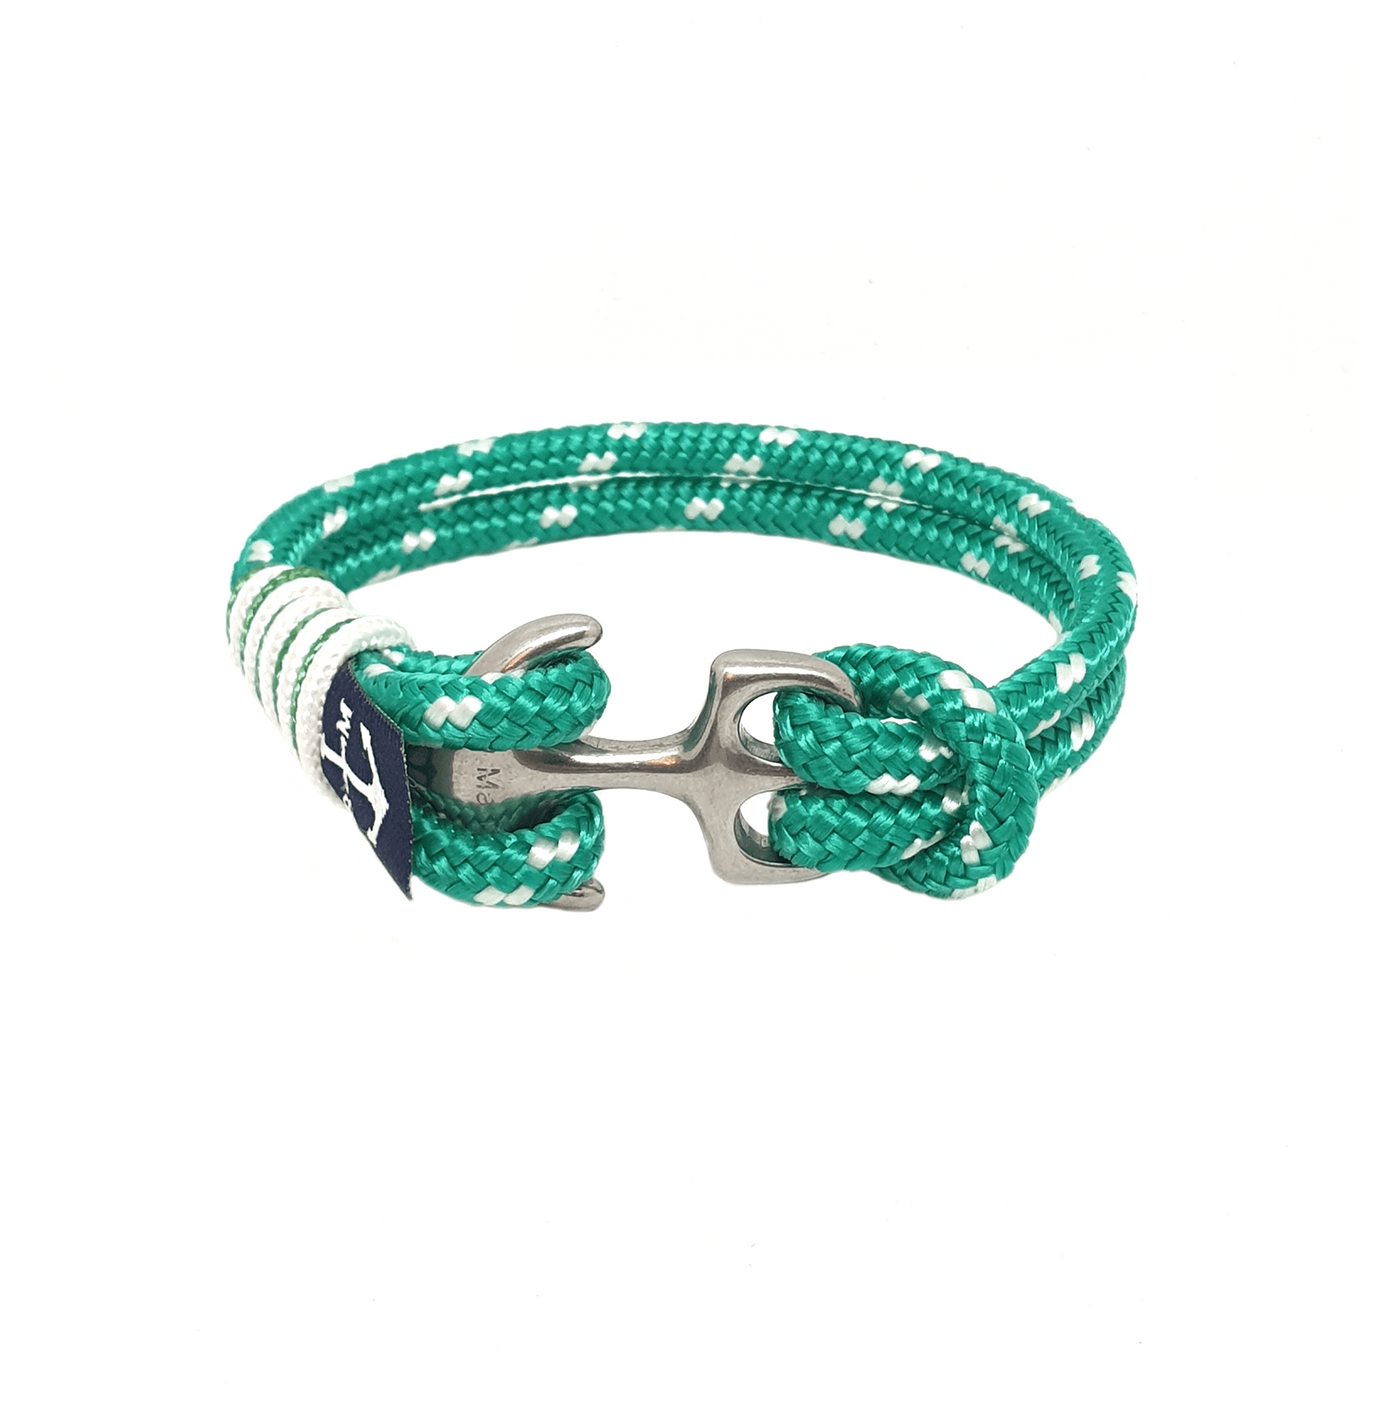 Eabha Nautical Bracelet